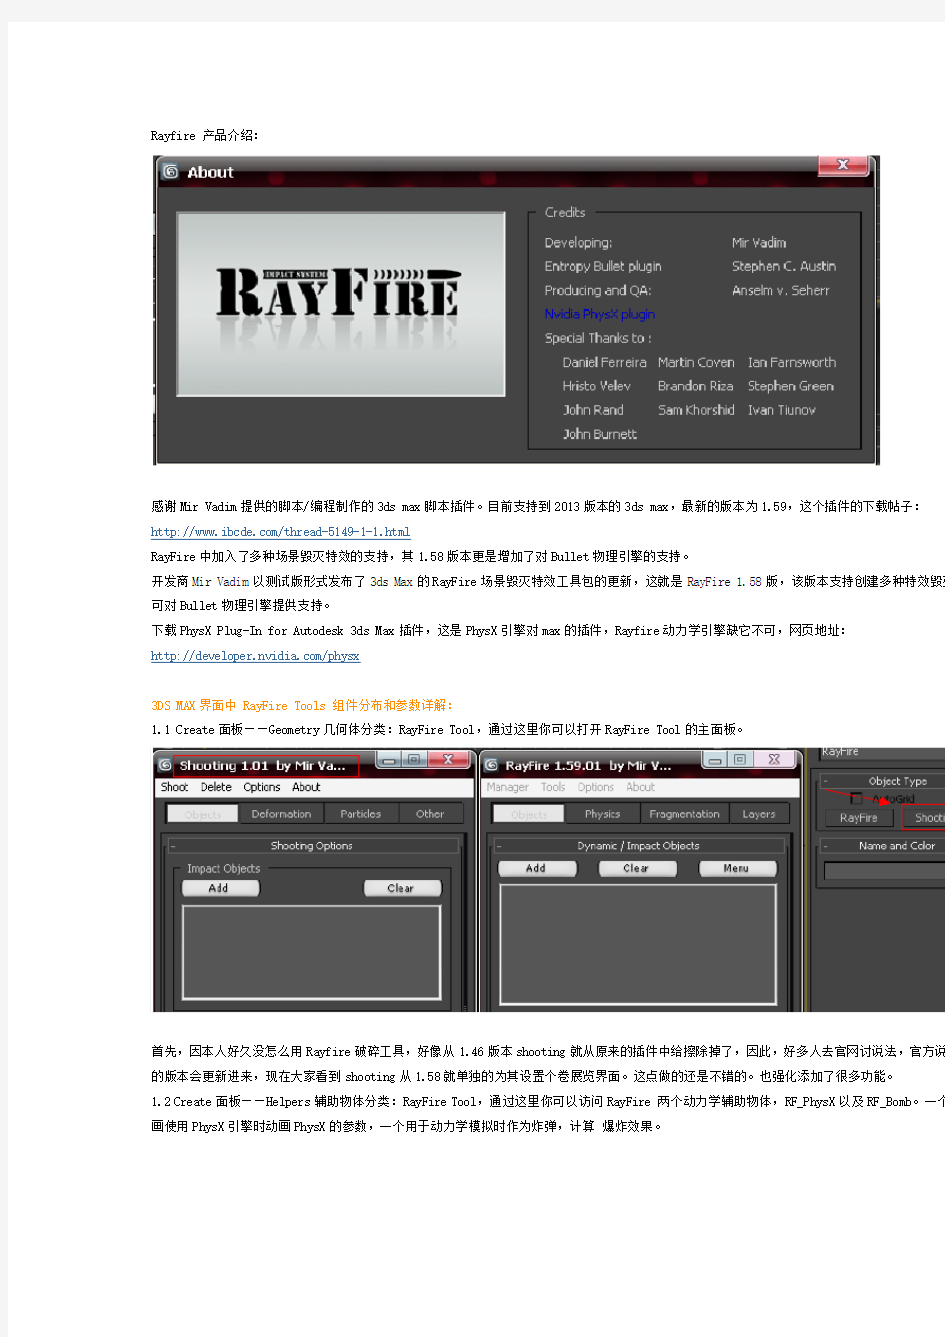 rayfire1.59教学 对专业的朋友很有用哦!